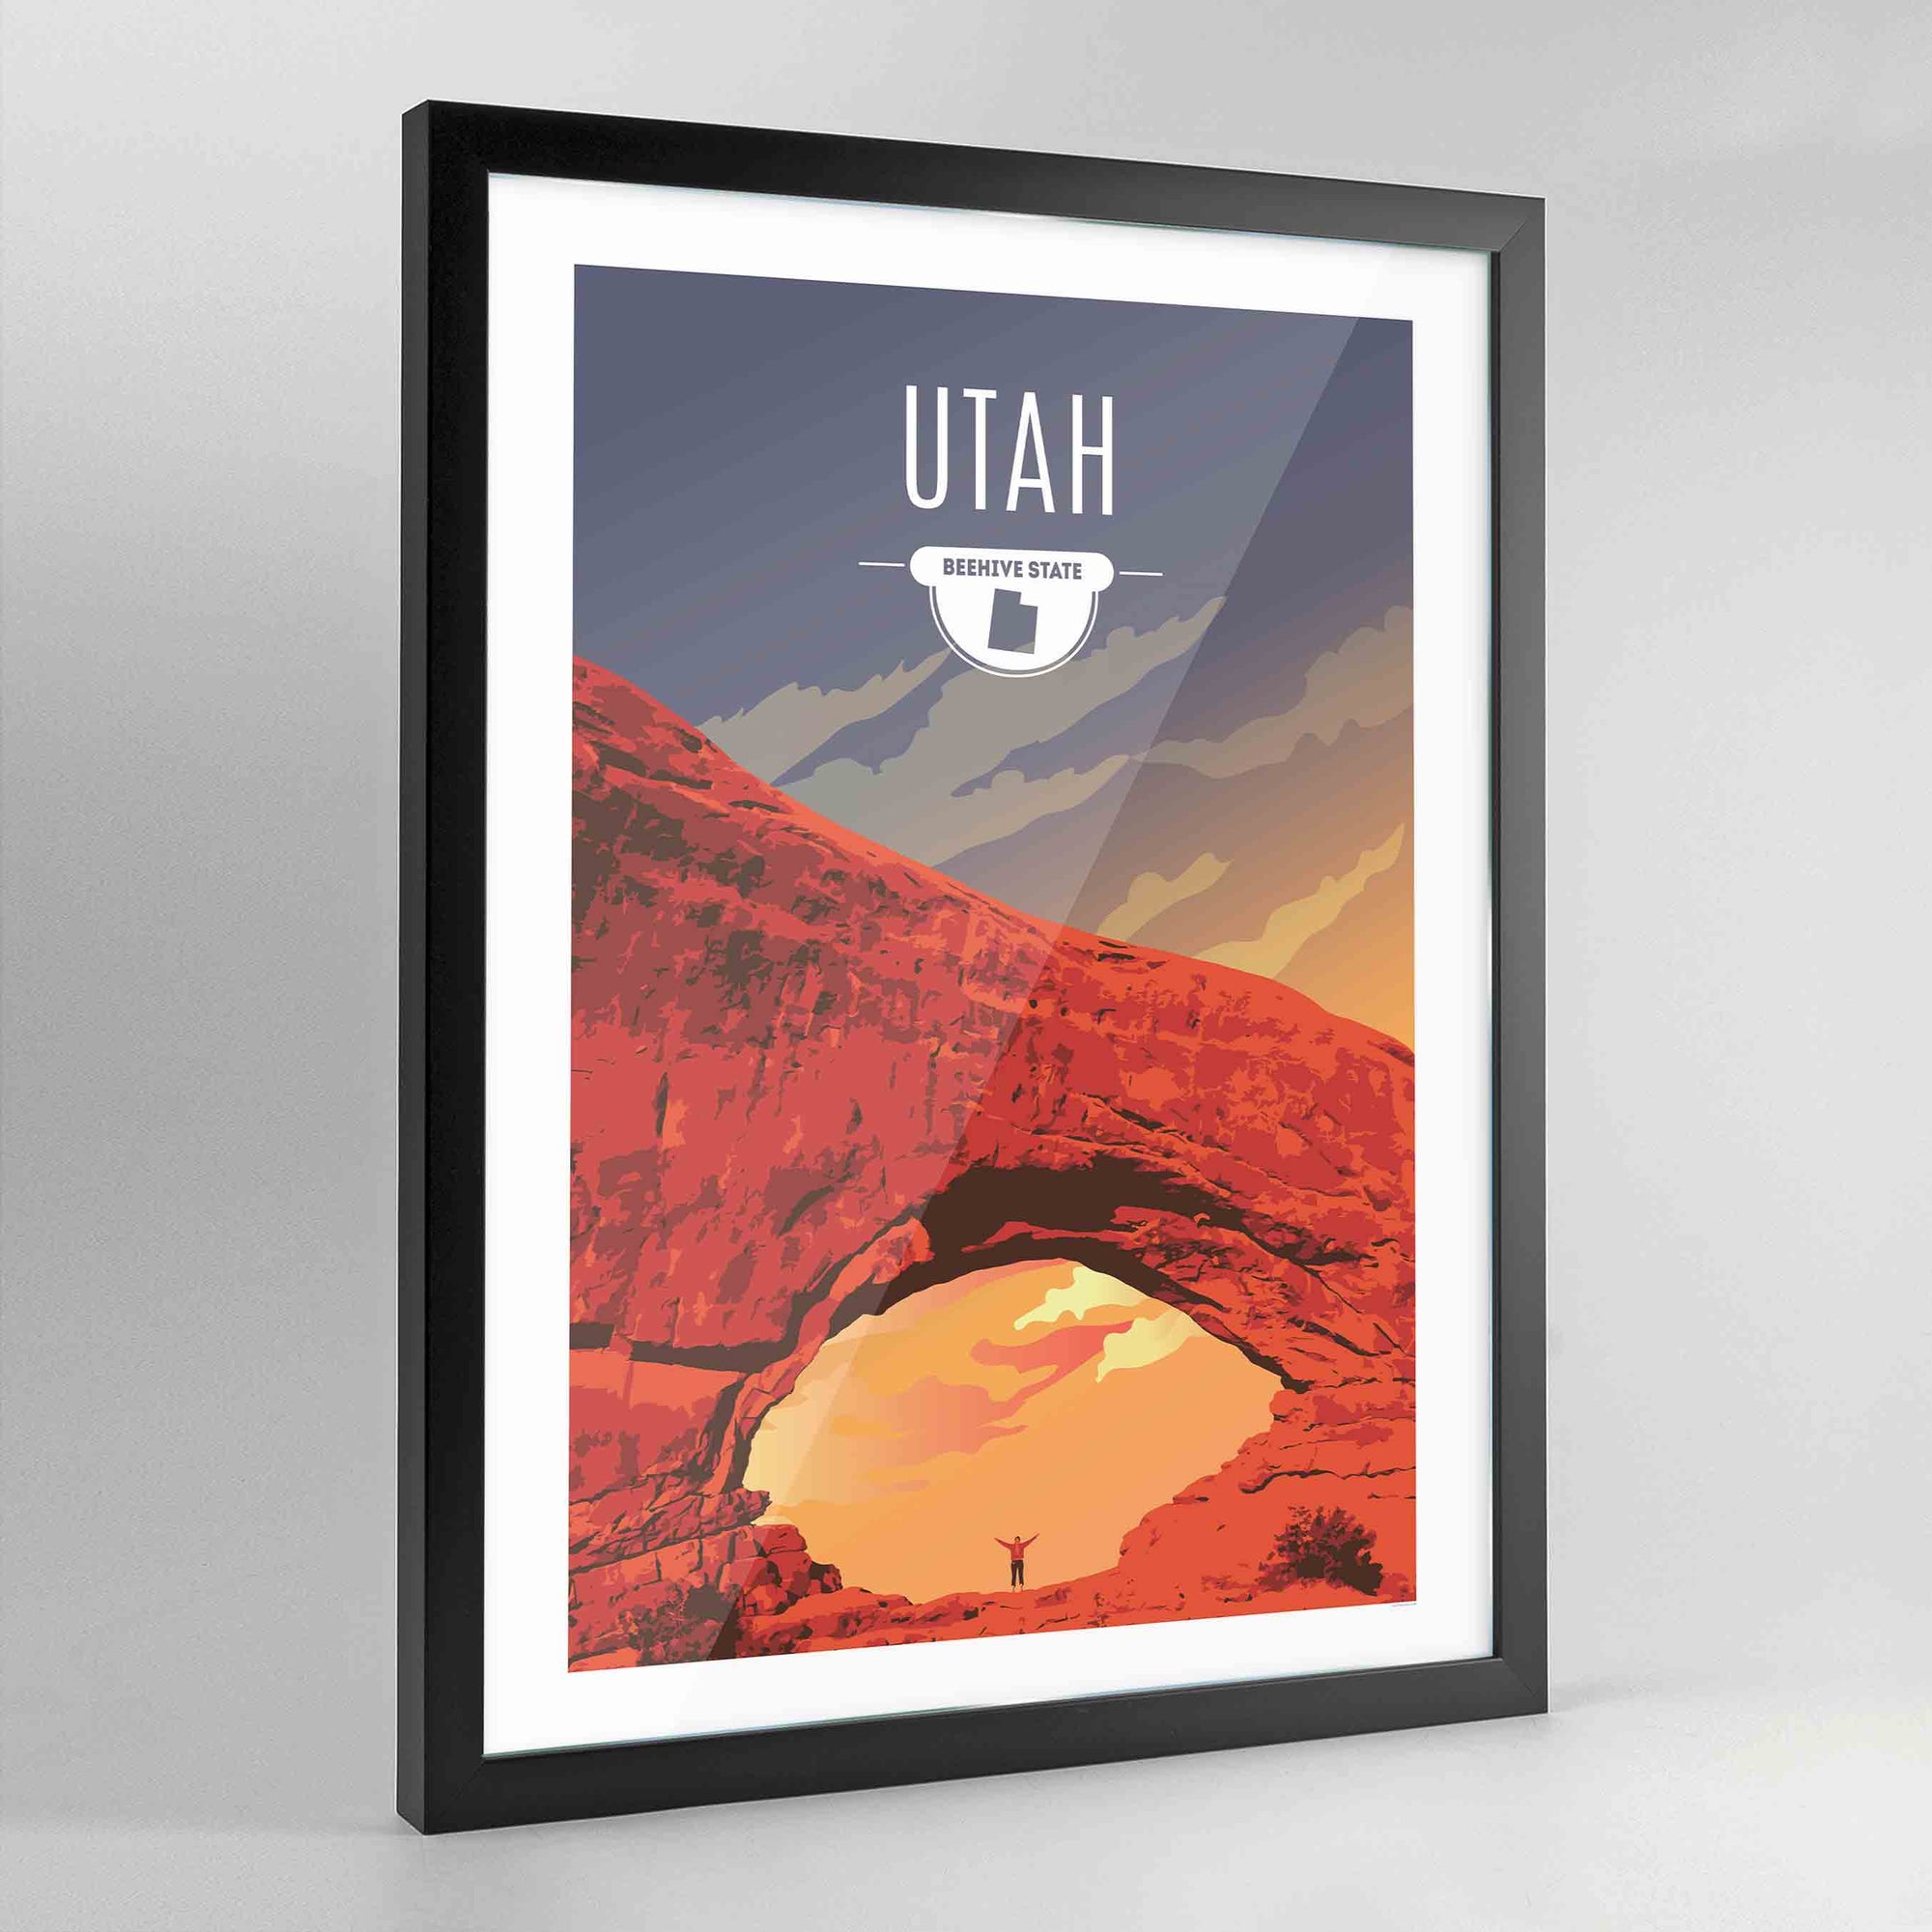 Utah State Print